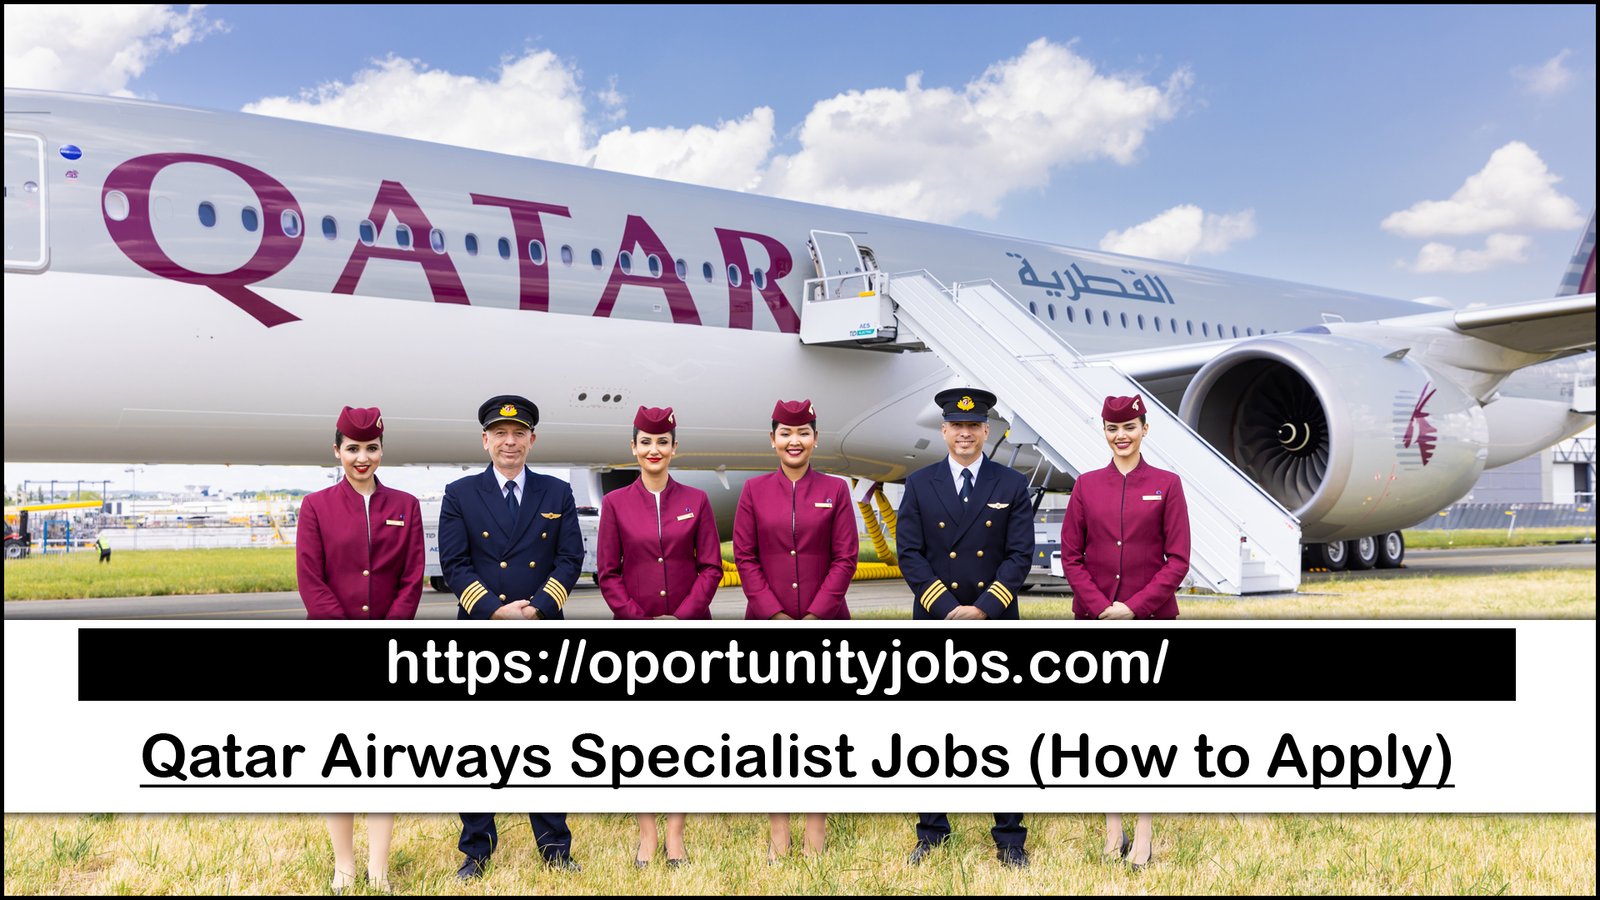 Qatar Airways Specialist